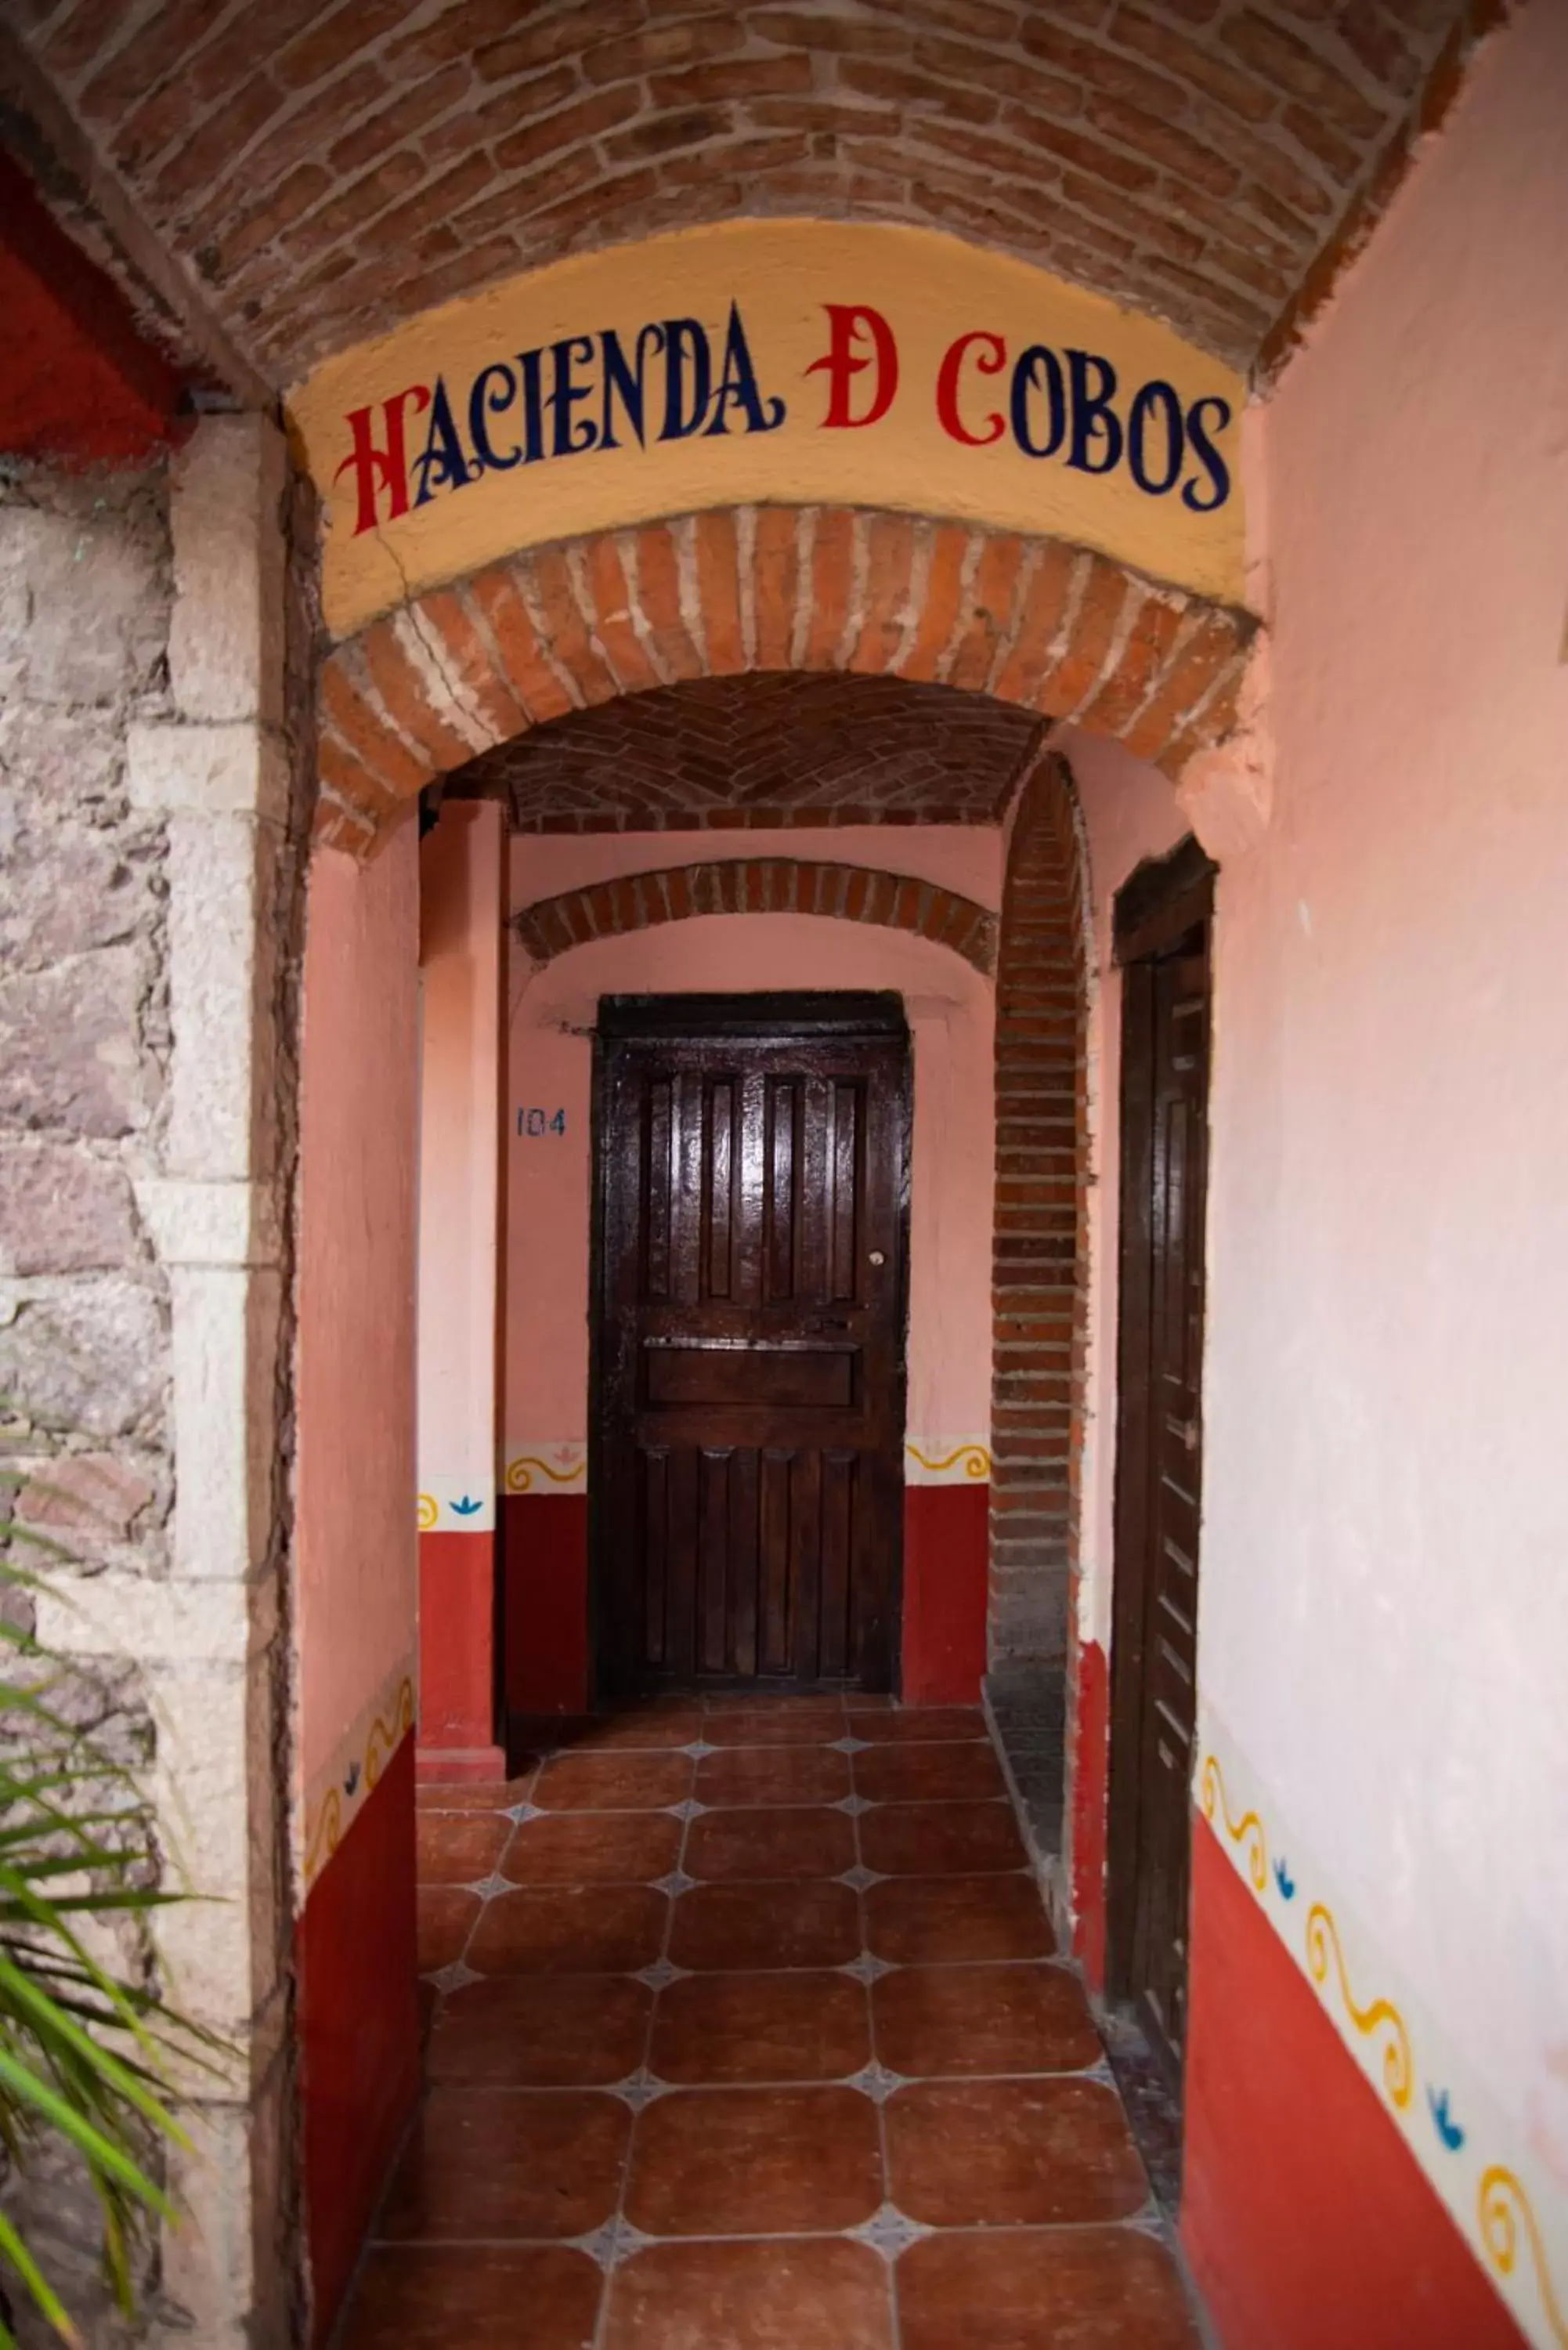 Property building in Hotel Hacienda de Cobos